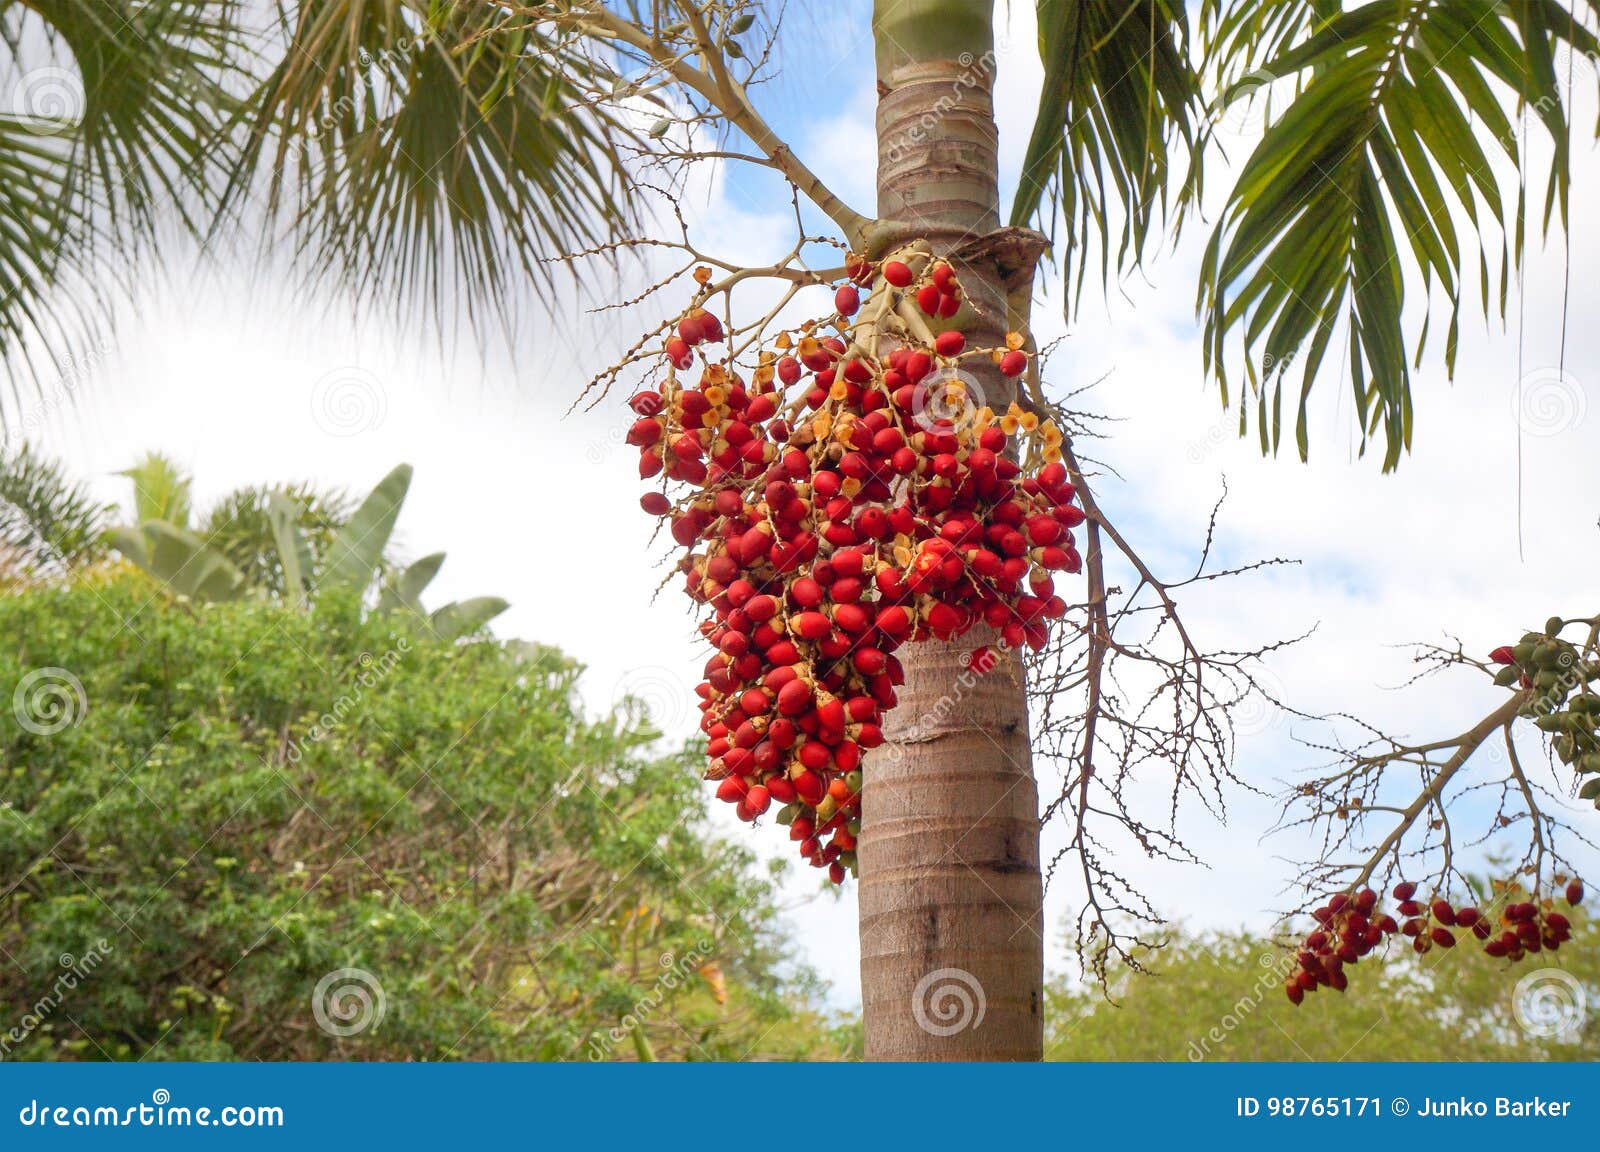 أشجار النخيل مانيلا الفاكهة الصالحة للأكل